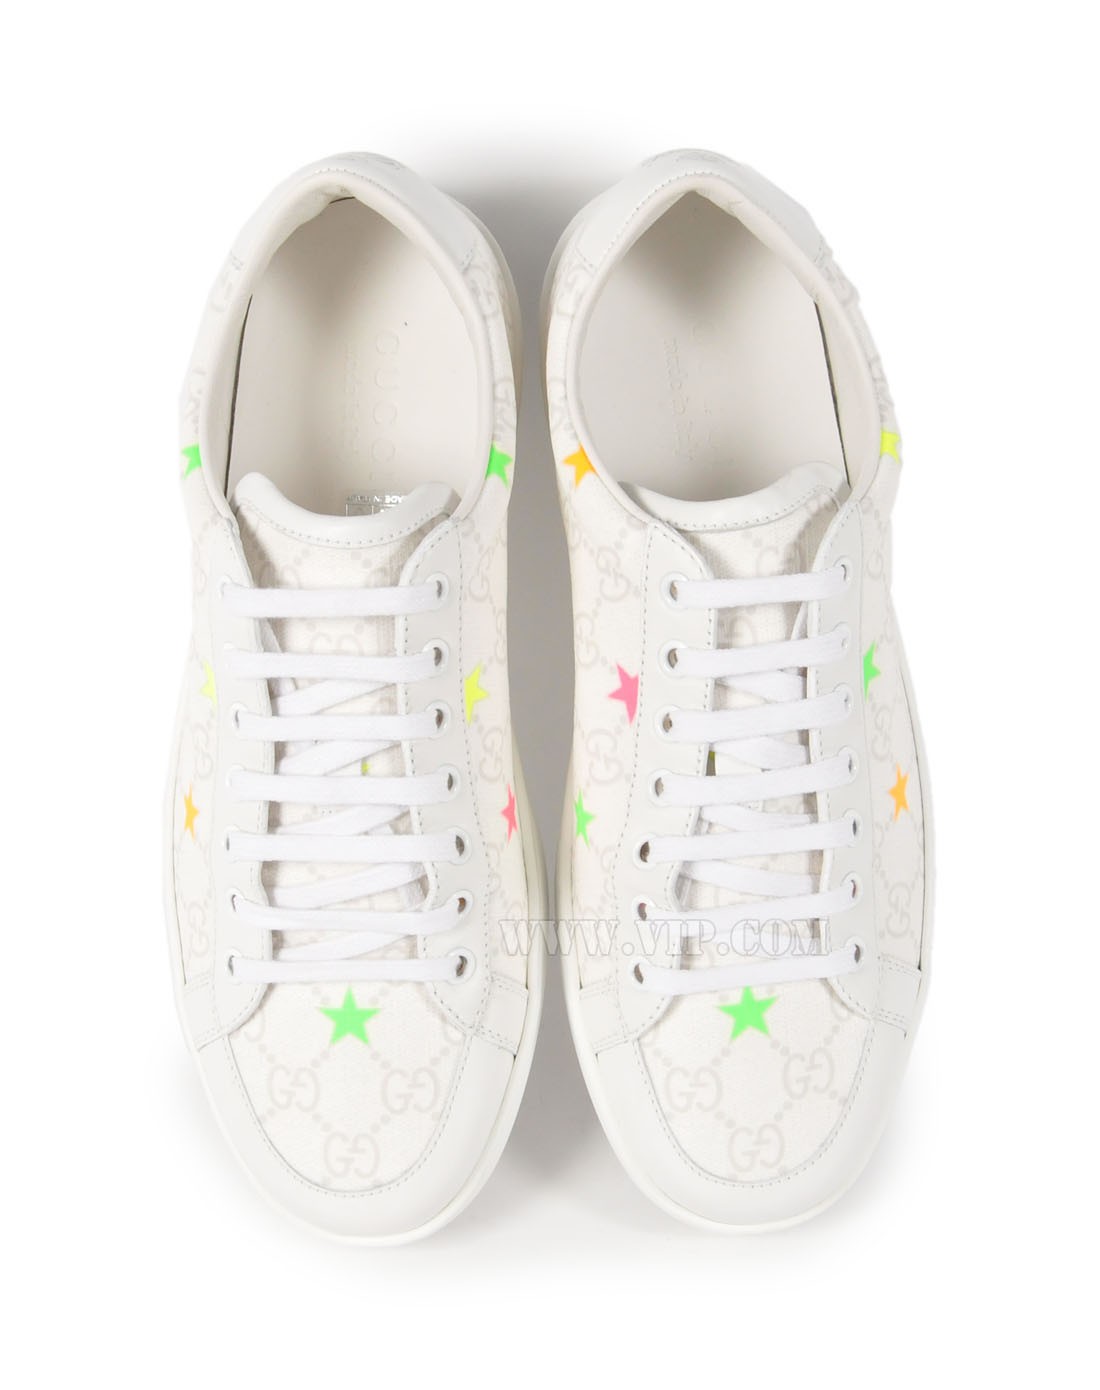 星星logo的鞋子图片